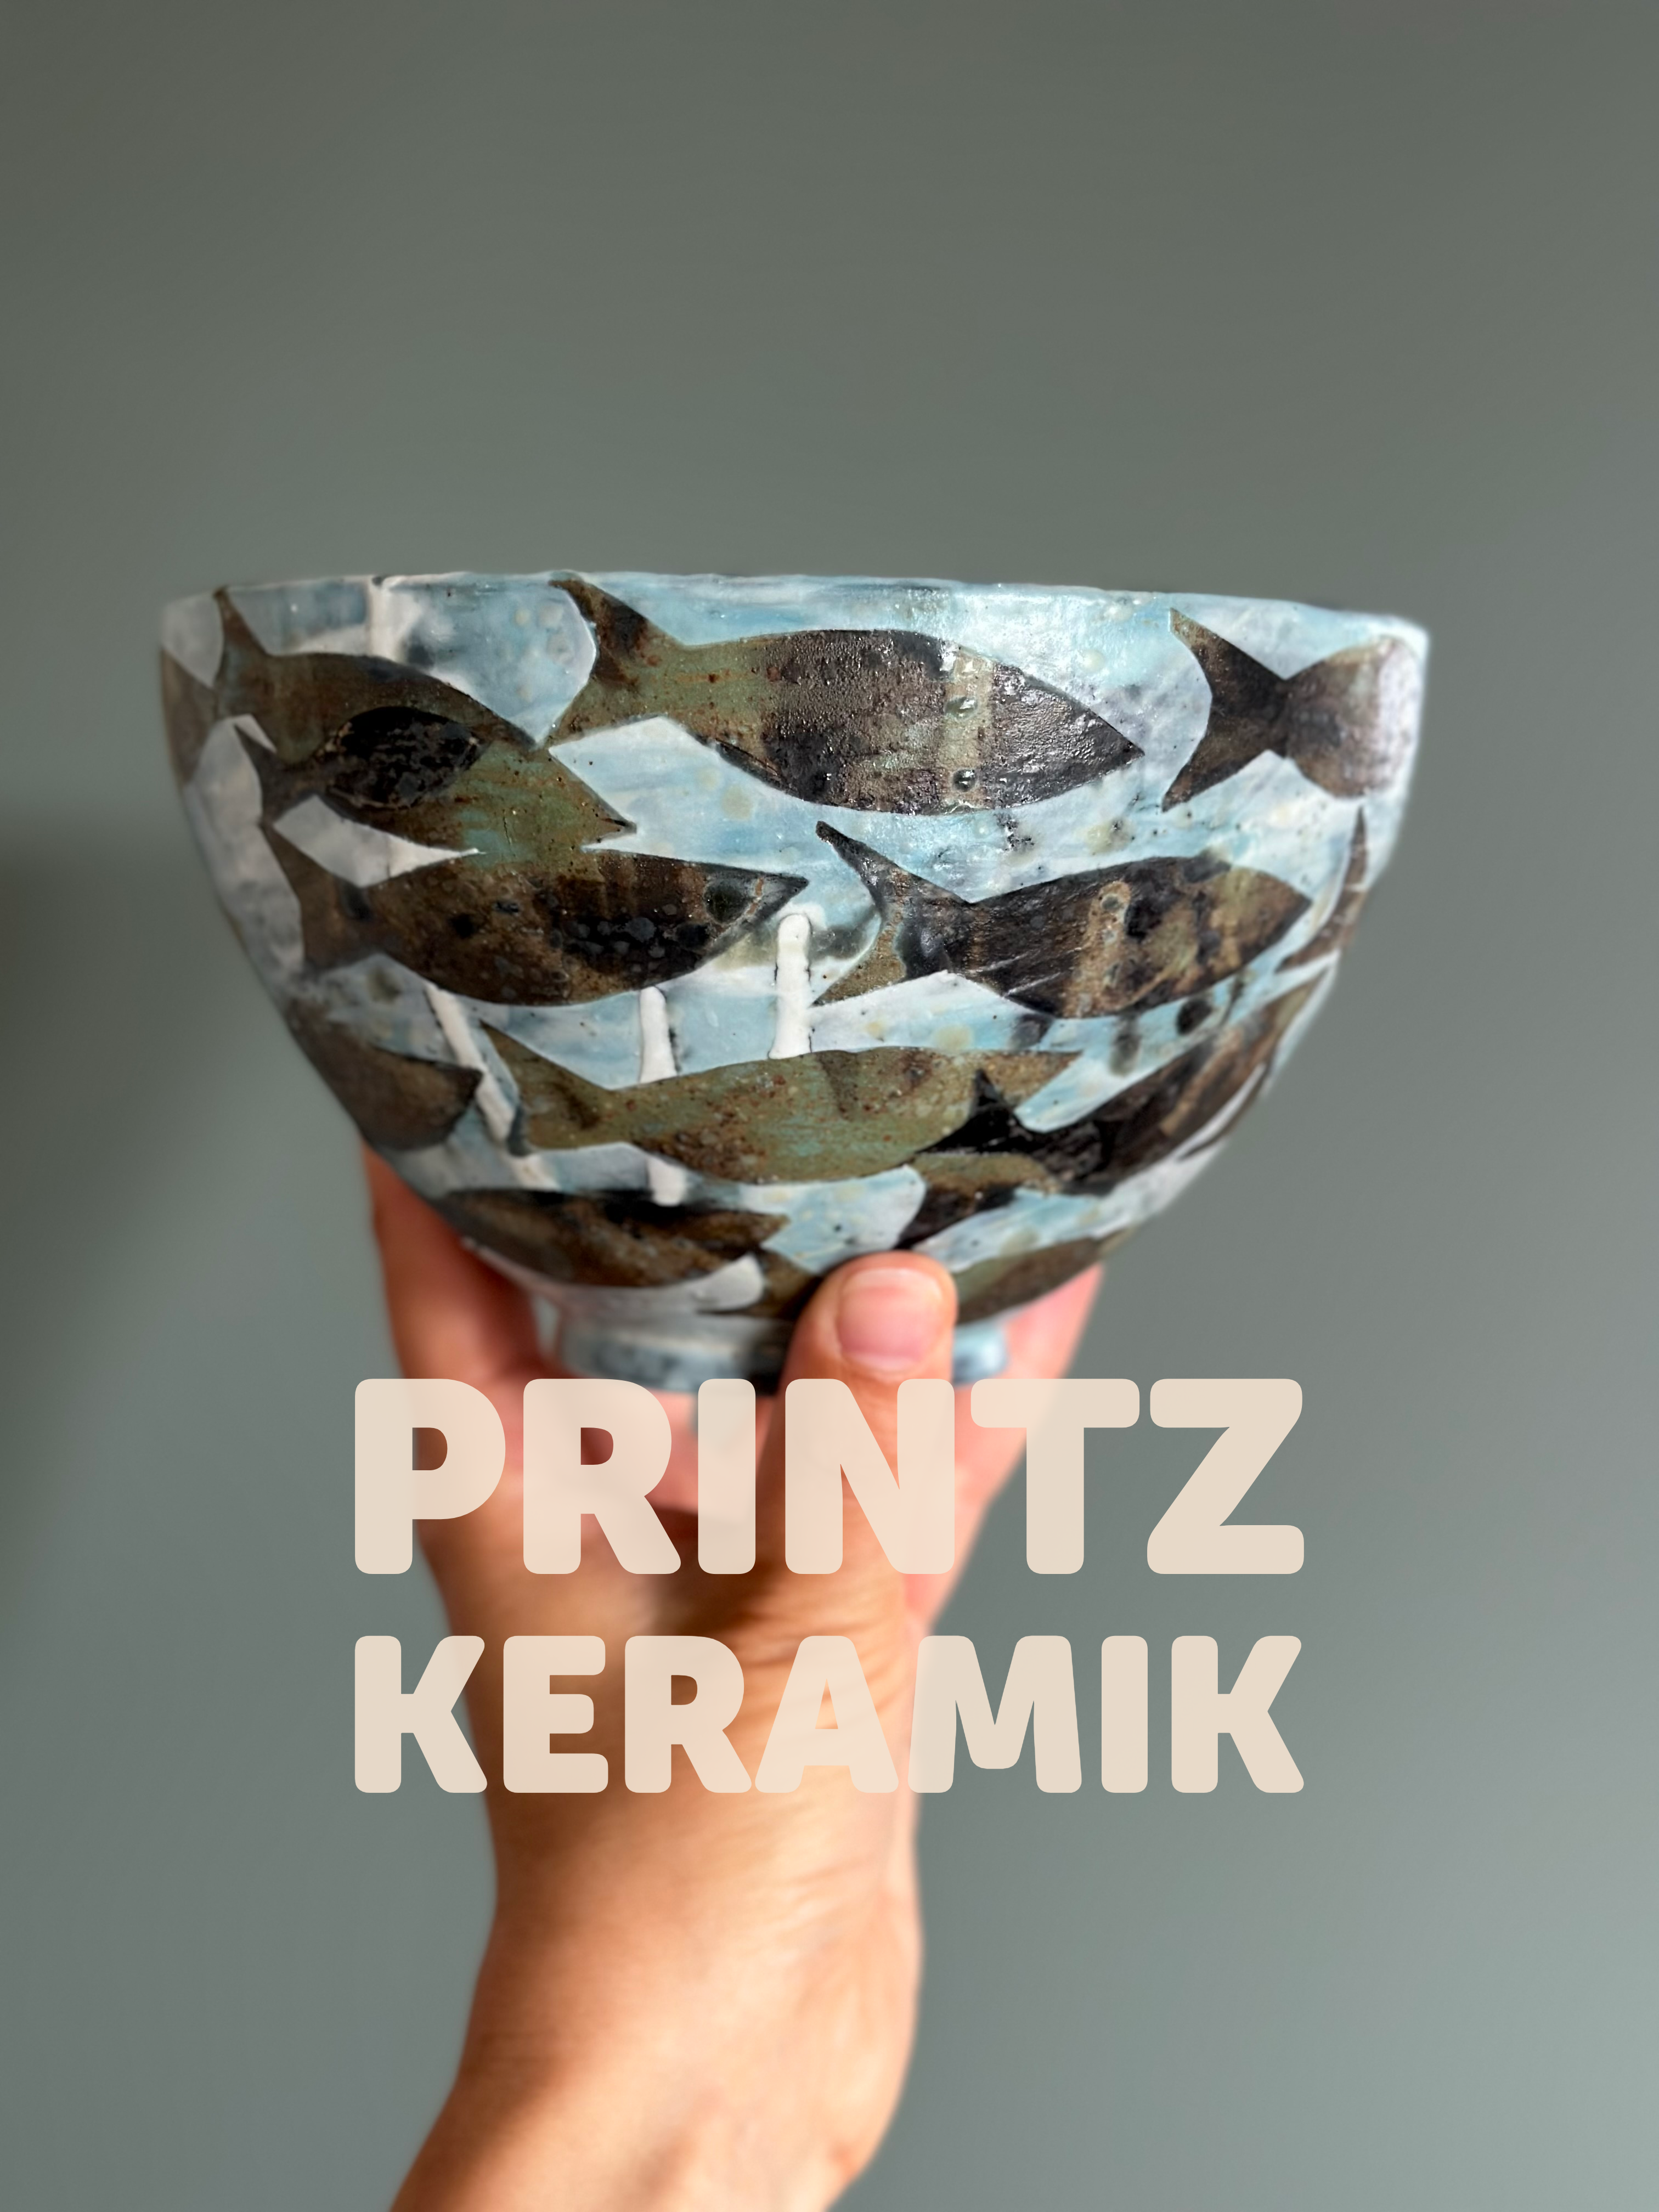 Den Langsomme Rejse: Unika Keramik af Dansk Pottemager